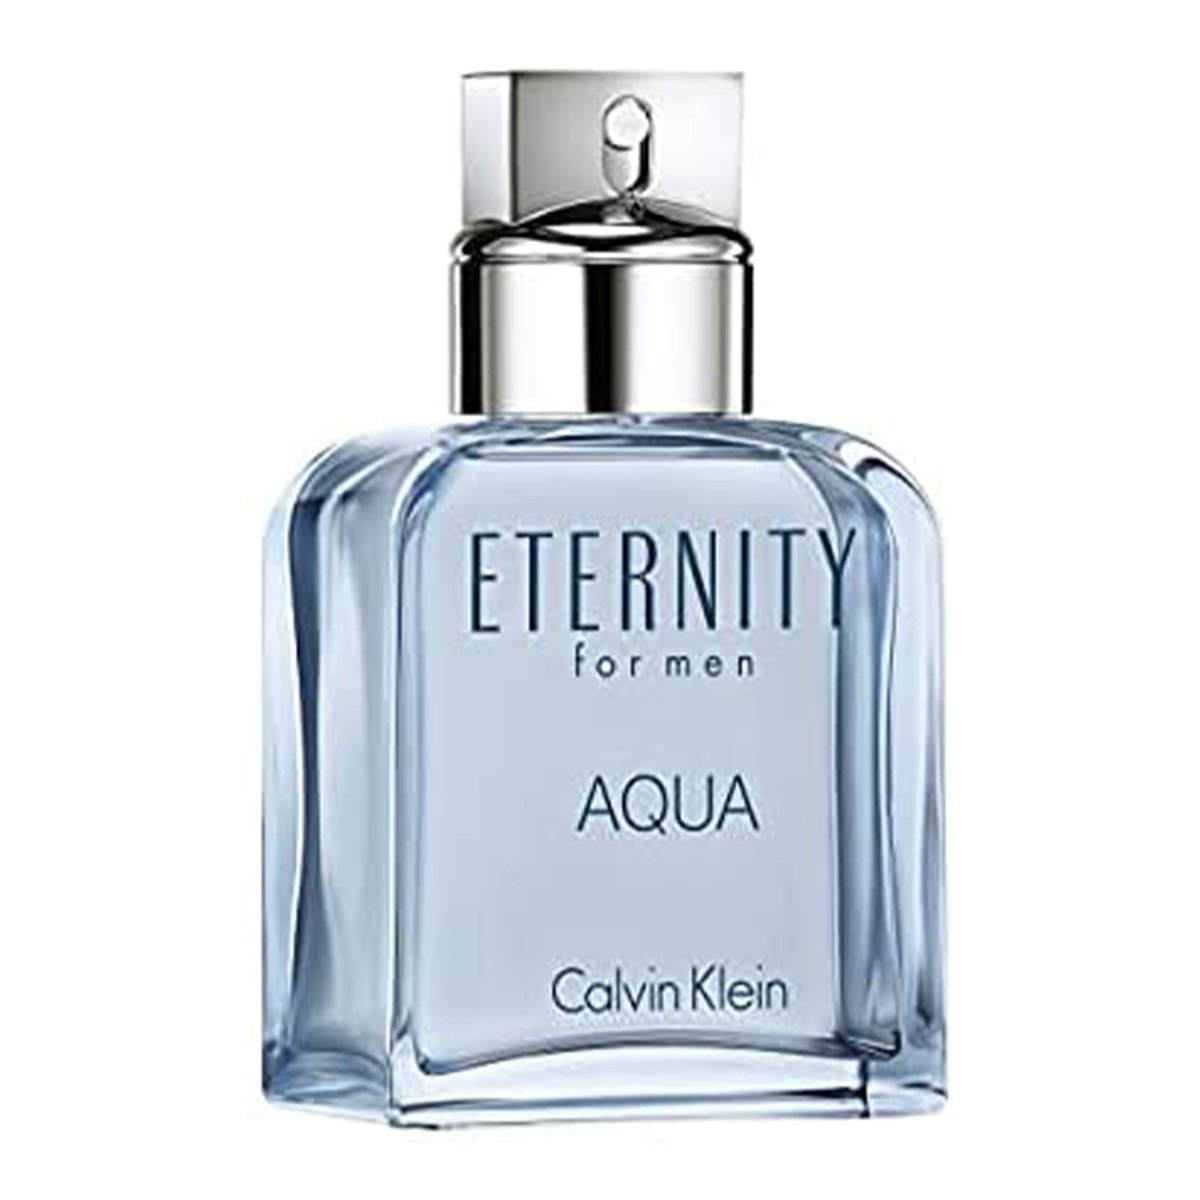 Calvin Klein Eternity Aqua Eau De Toilette For Men 100ml